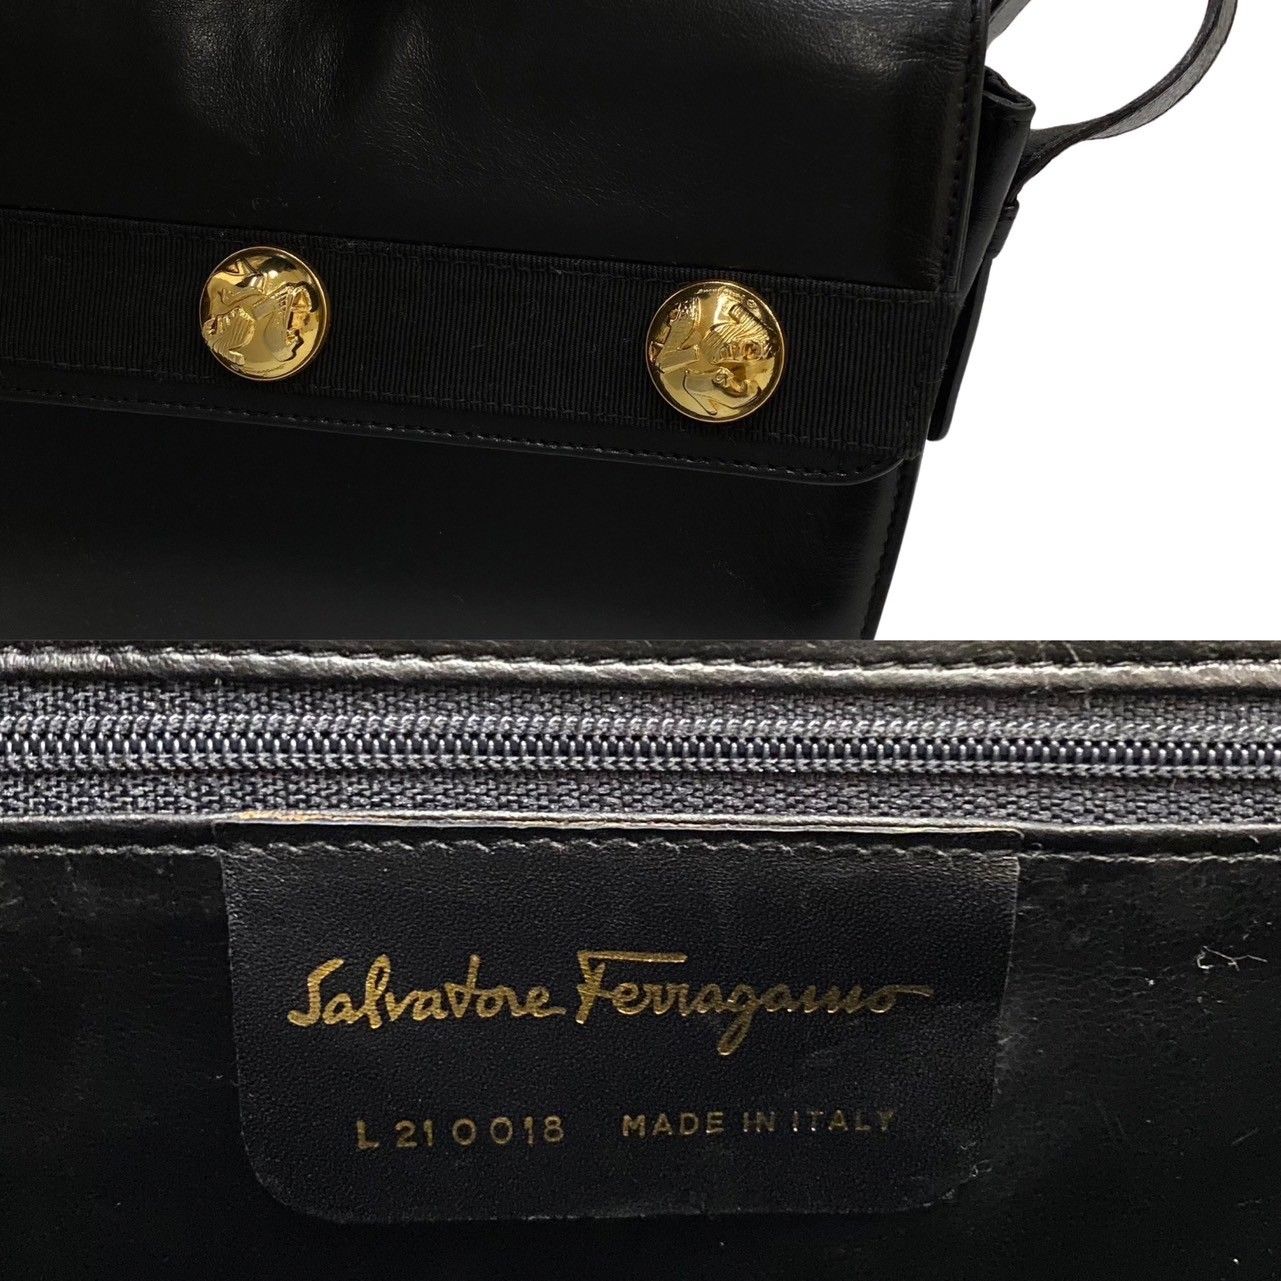 極 美品 Salvatore Ferragamo サルヴァトーレフェラガモ ヒール 金具 レザー ワン ショルダーバッグ トートバッグ ブラック 20698